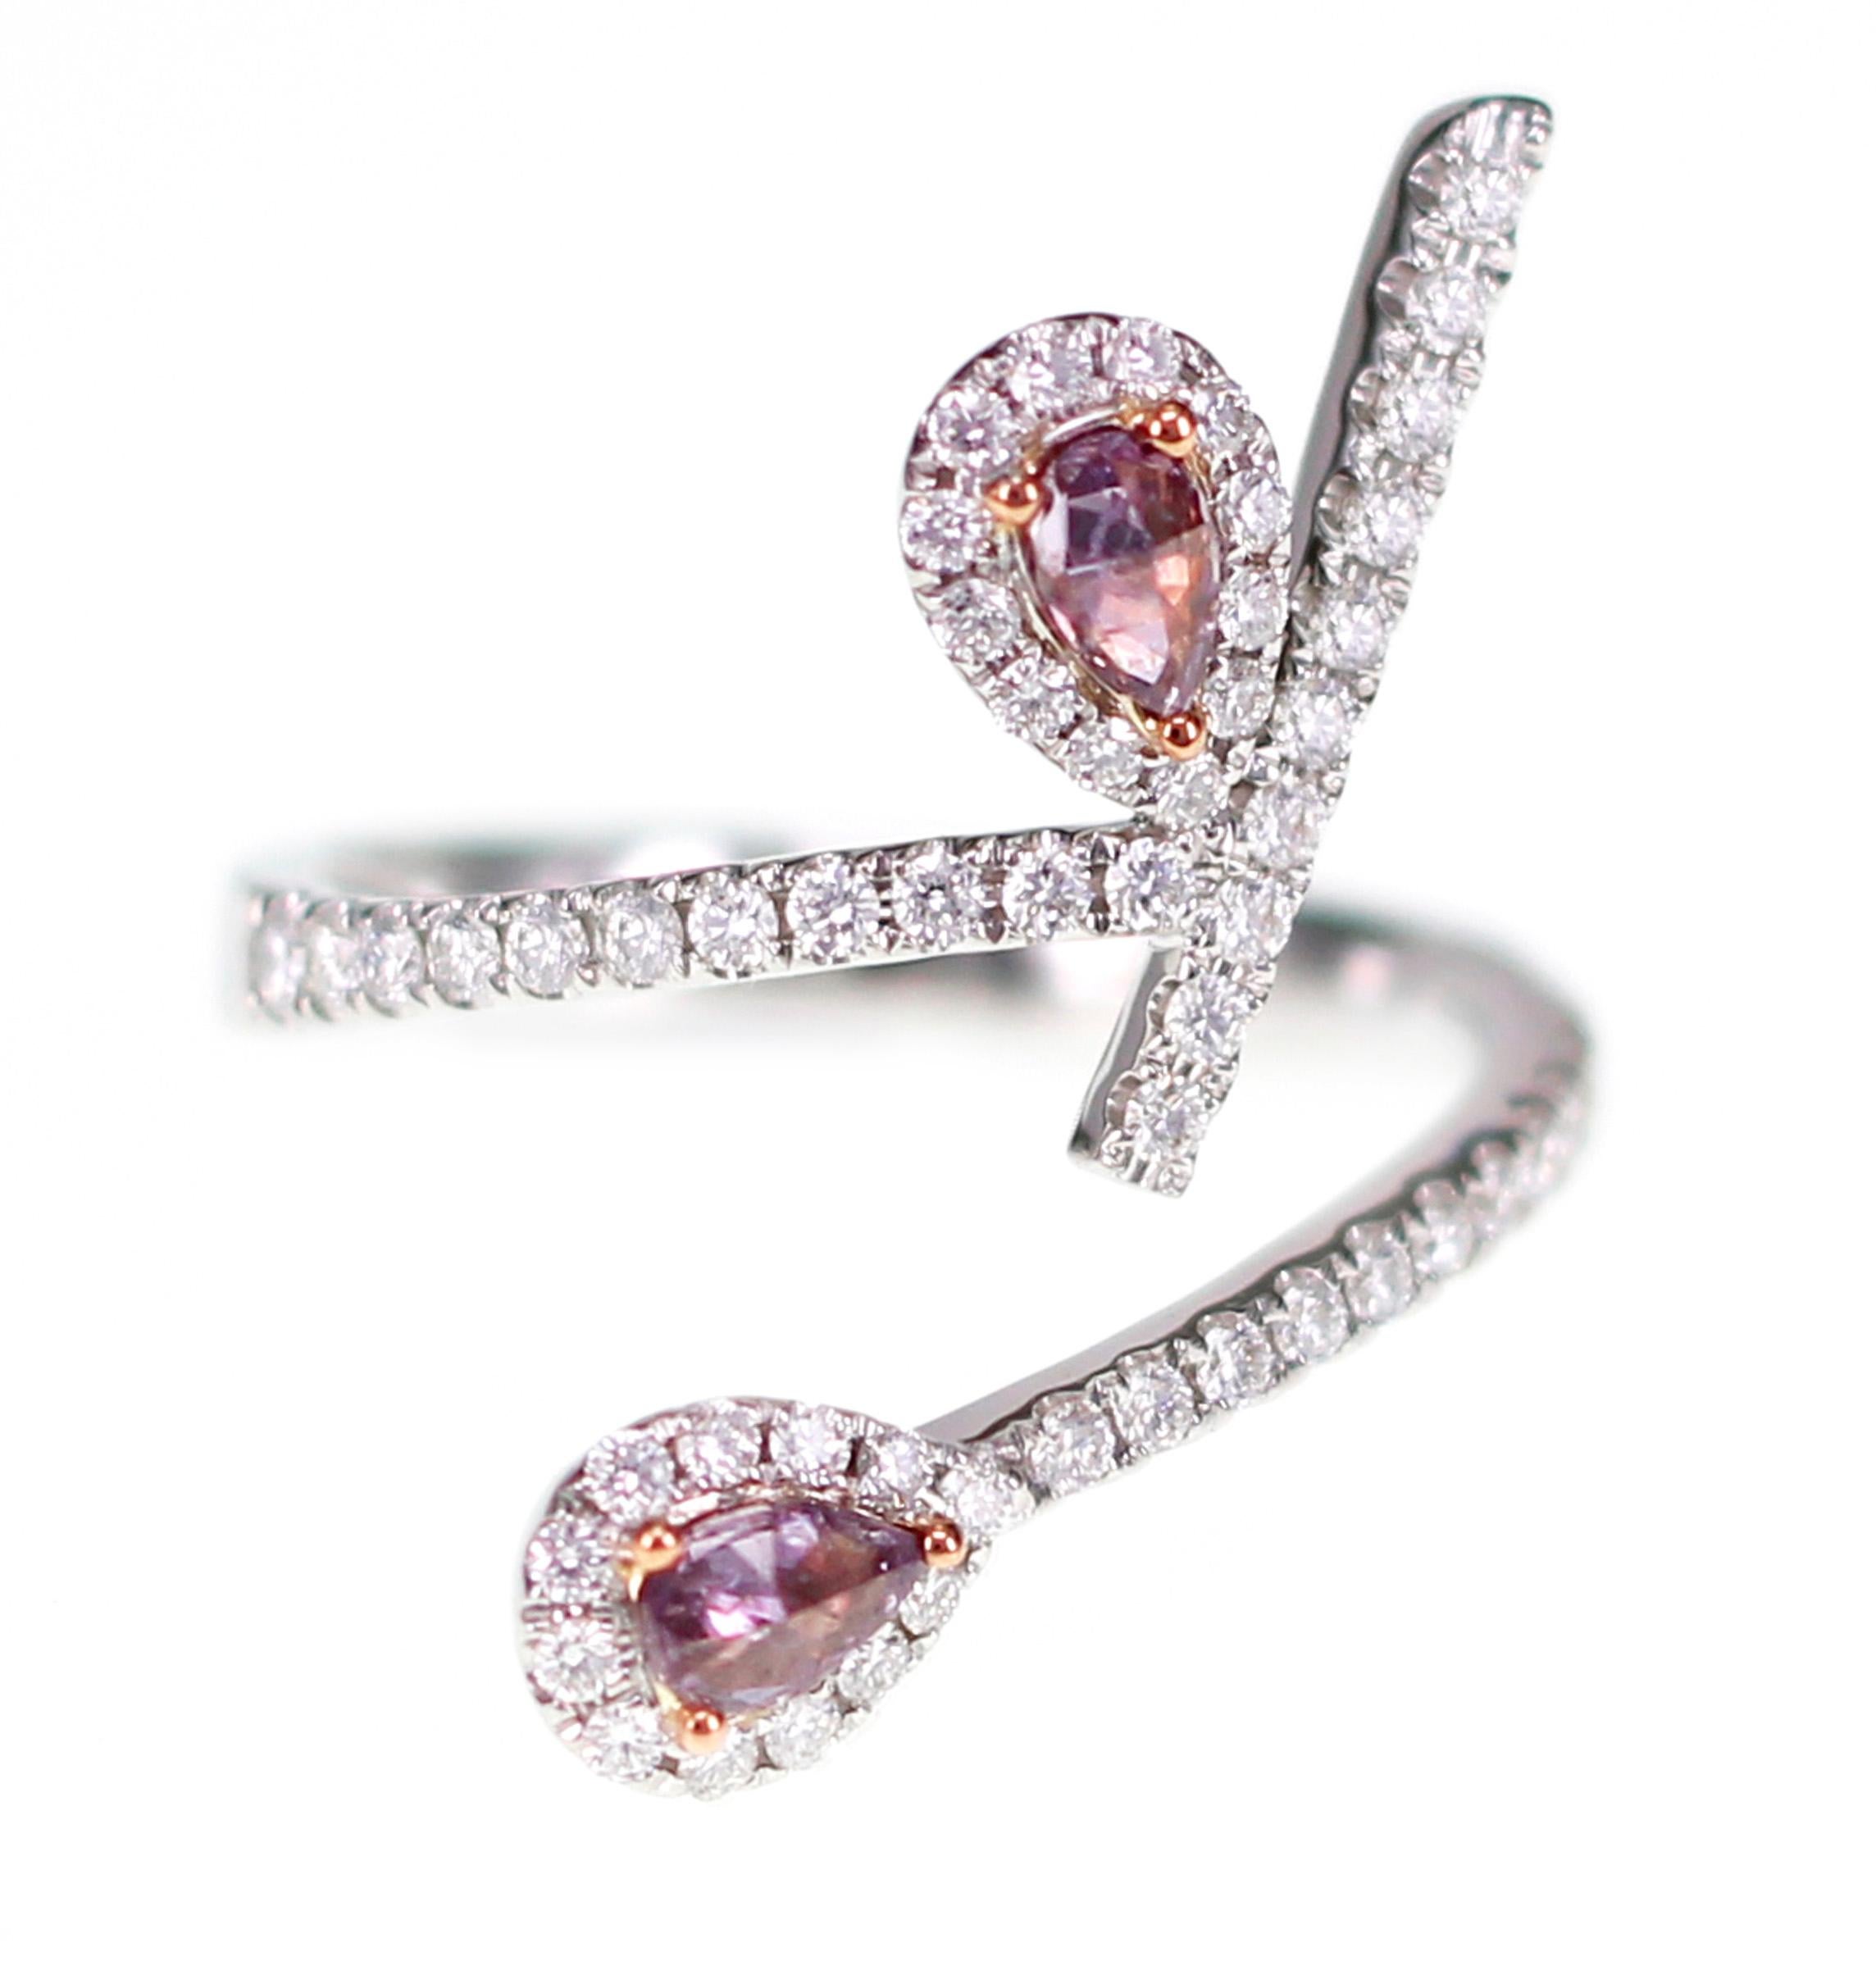 Des diamants roses naturels d'Argyle sont sertis sur une bague jumelle très chic. Les diamants roses pèsent 0,25 carat et les diamants blancs 0,5 carat. Les diamants roses sont rares et sont très demandés ces derniers temps en raison de leur valeur